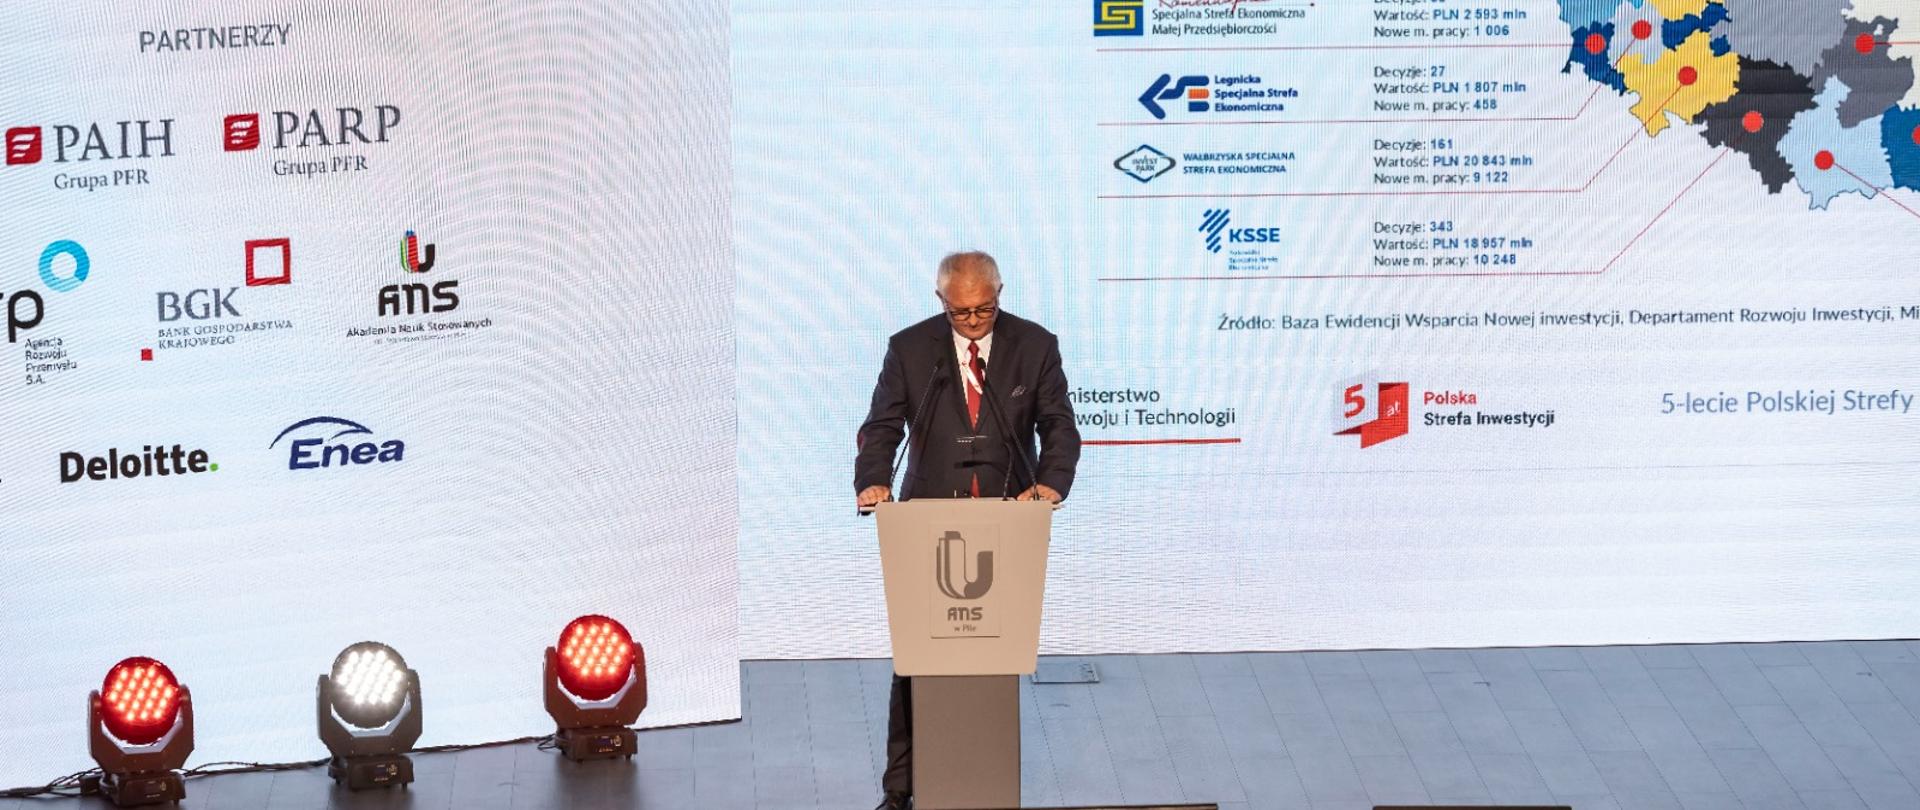 Wiceminister Grzegorz Piechowiak przemawia podczas otwarcia kongresu gospodarczego zorganizowanego z okazji 5-lecia Polskiej Strefy Inwestycji.